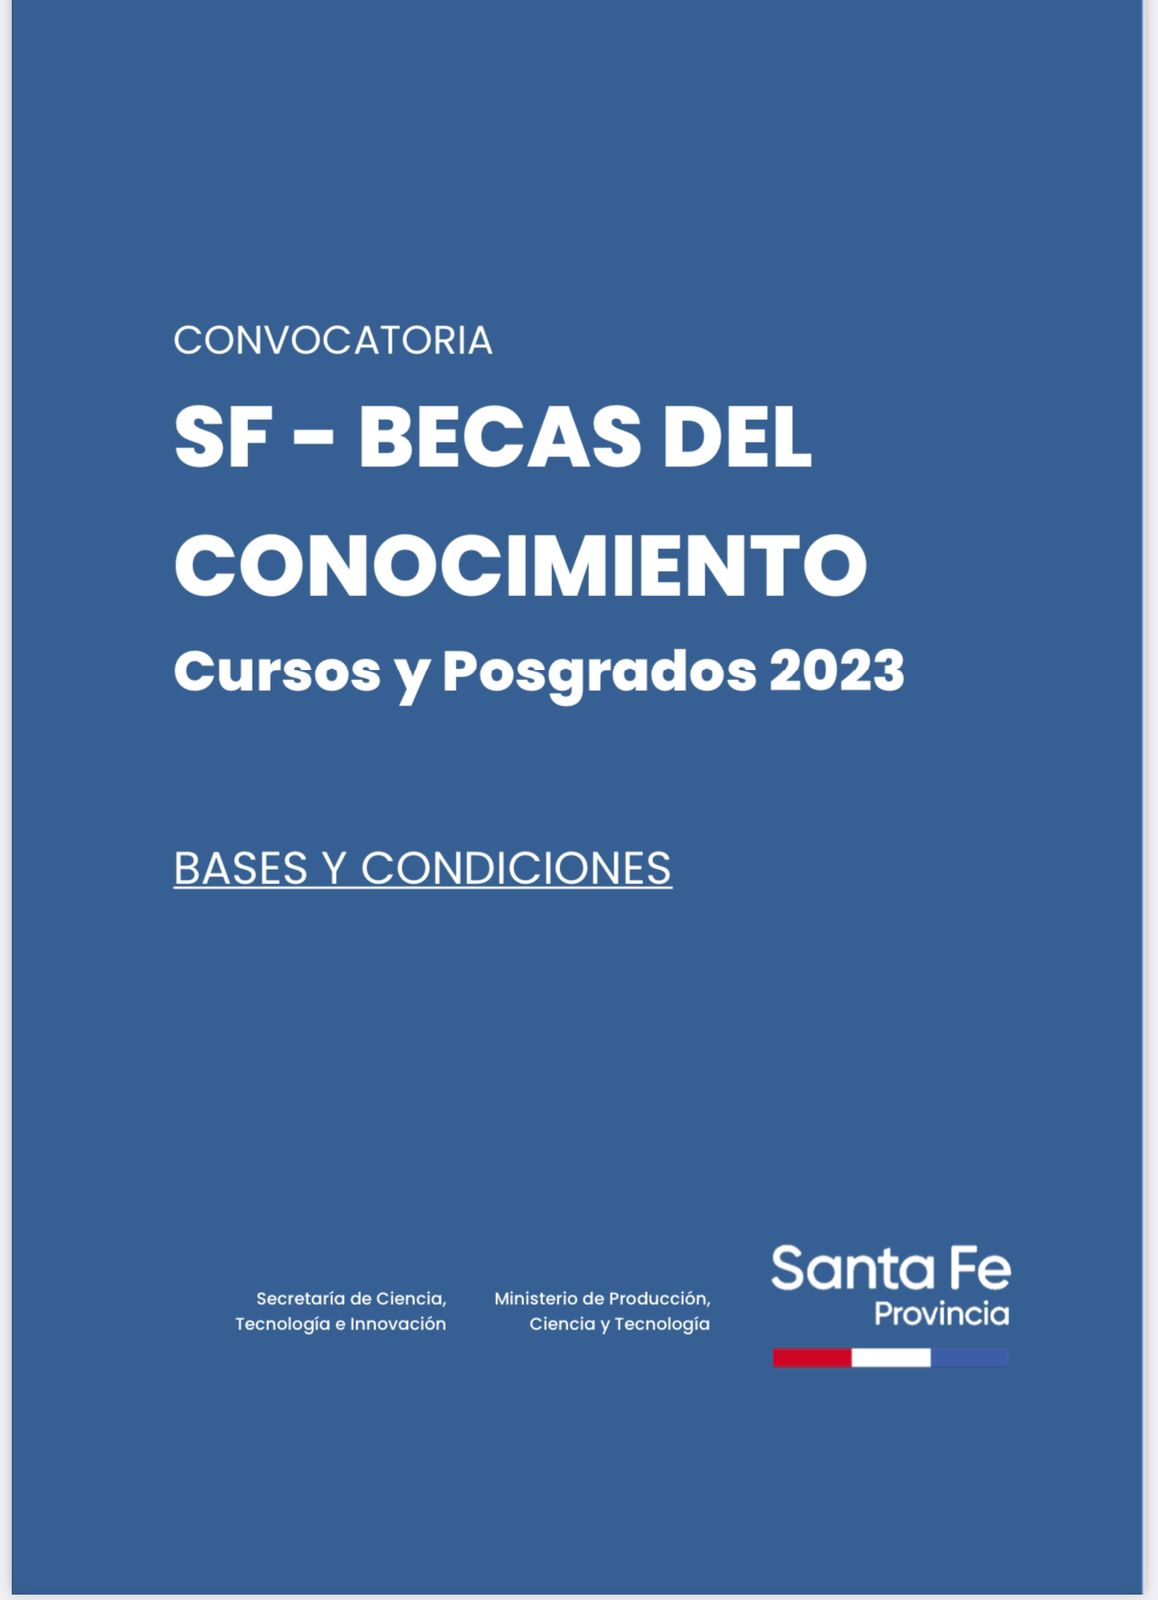 Nueva convocatoria del gobierno provincial: SF Becas del Conocimiento